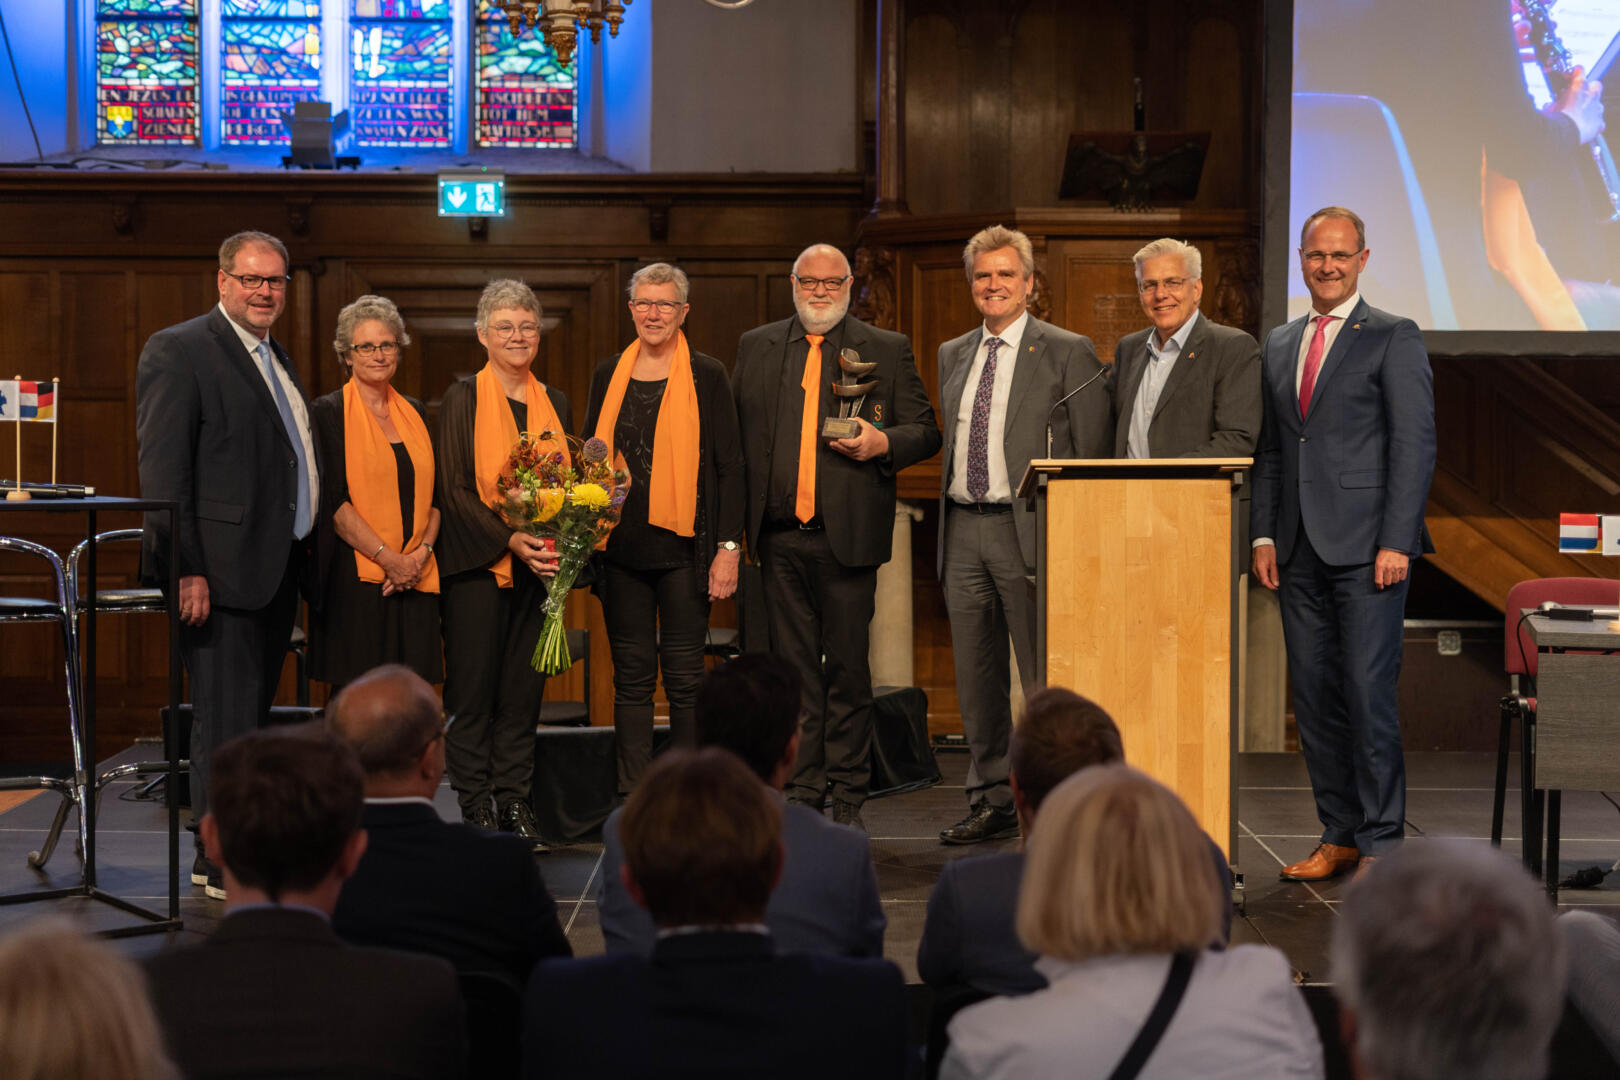 De winnaars van de People to People EUREGIO-prijs staan op het podium samen met vier bestuursleden van de EUREGIO. De winnaars houden een boeket bloemen en de prijs in hun handen.